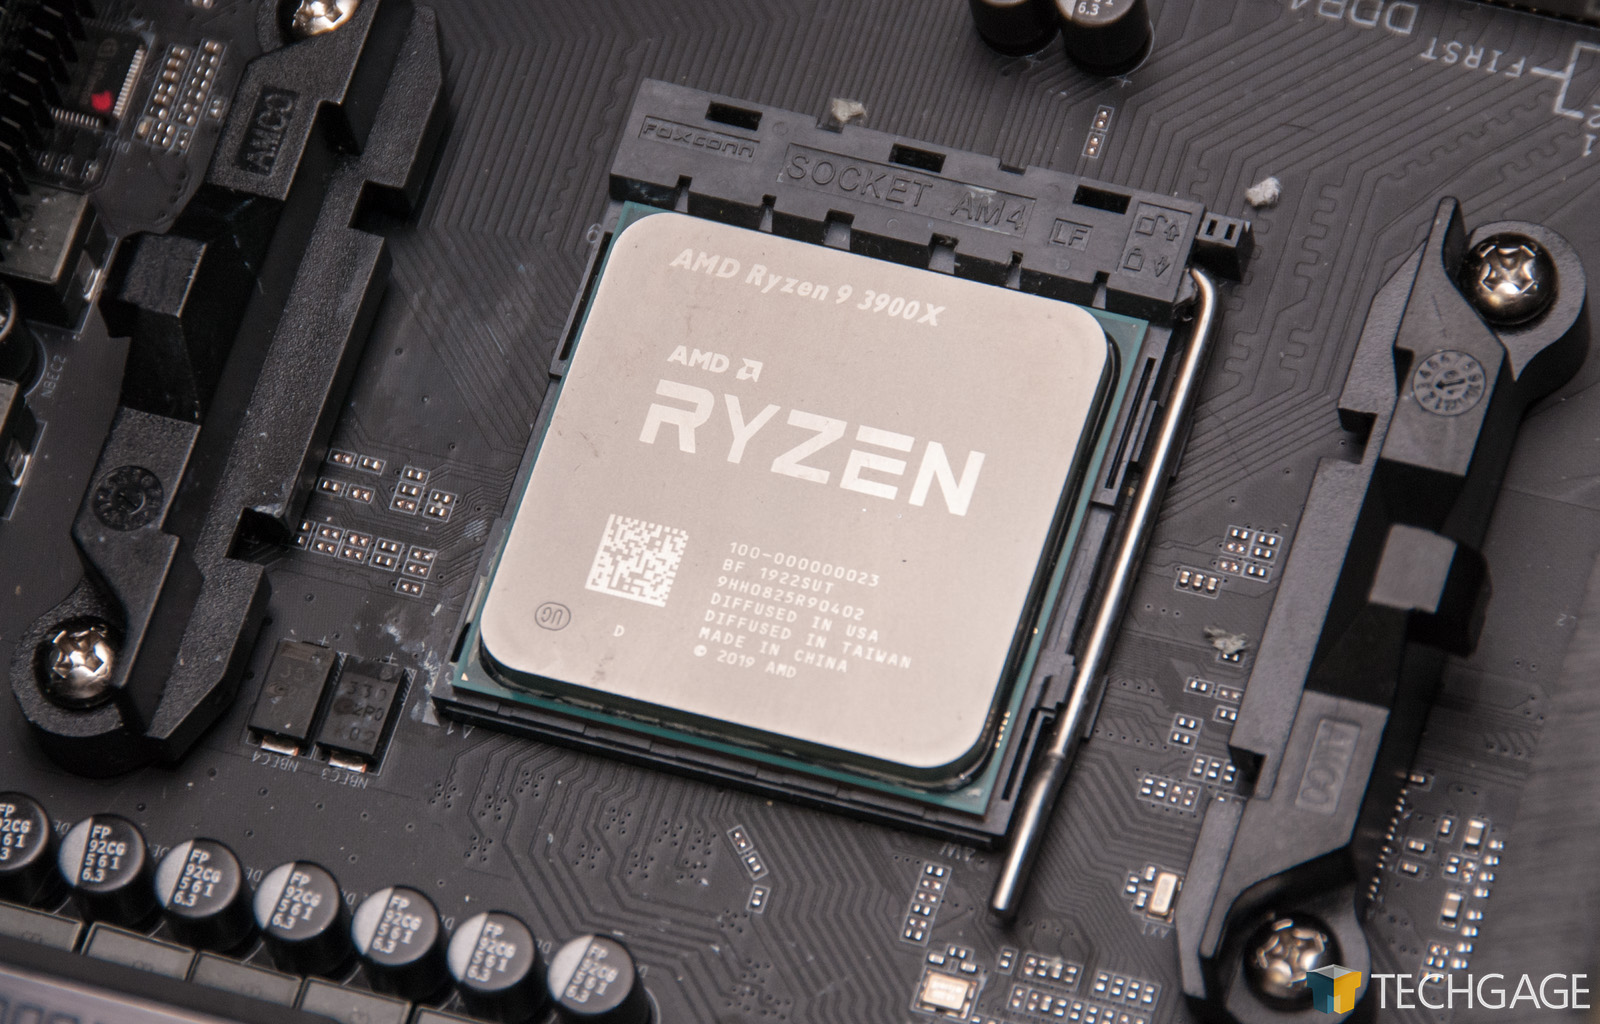 Amd ryzen 7 3700x 8 core. Ryzen 3700x. AMD Ryzen 7 3700x. AMD Ryzen 7 3700x 8-Core Processor. R7 3700x.